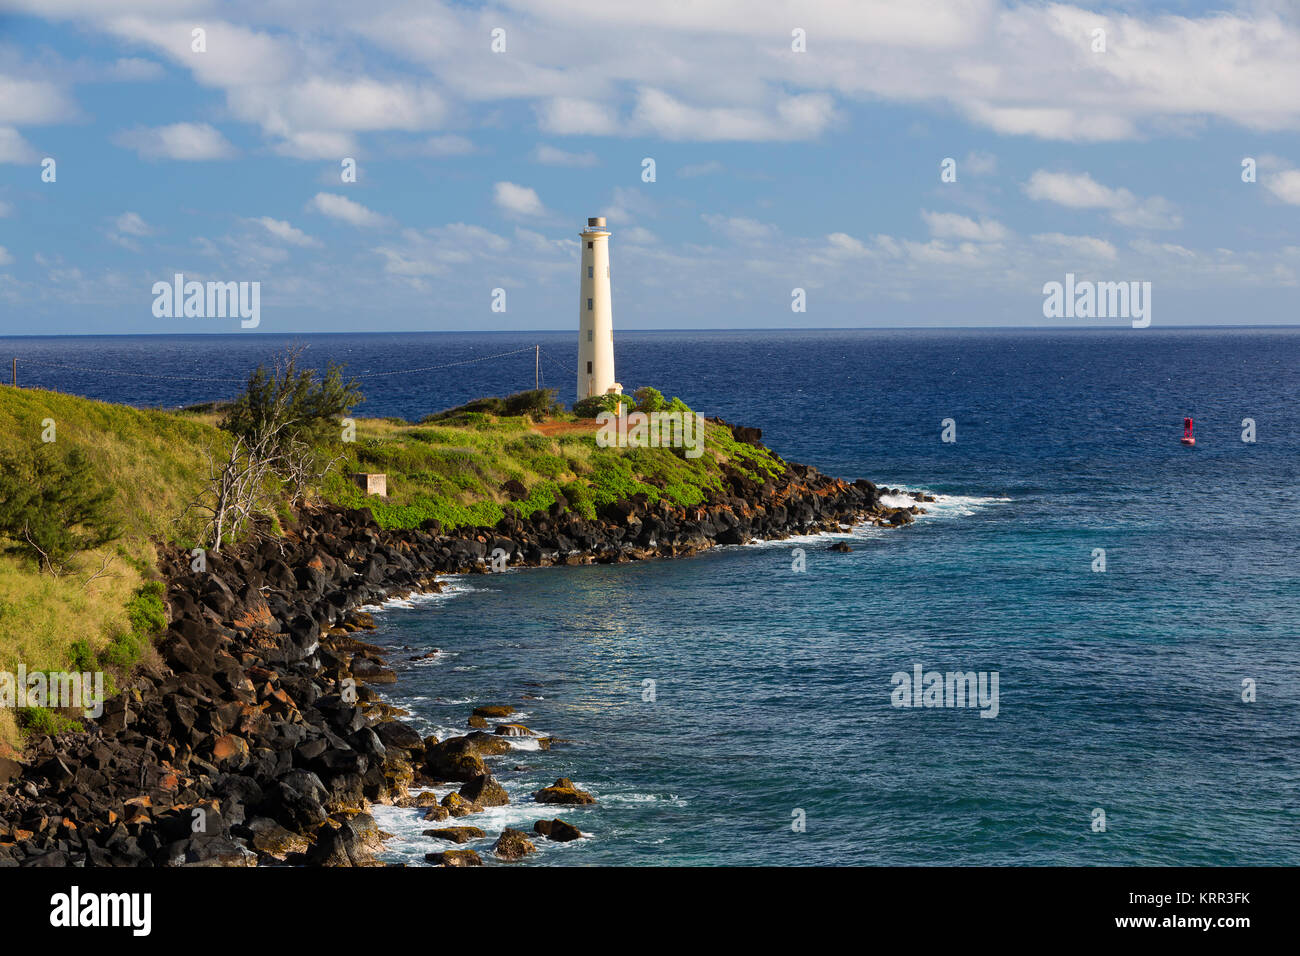 Nawiliwili Lighthouse on the island of Kauai, Hawaii. USA Stock Photo